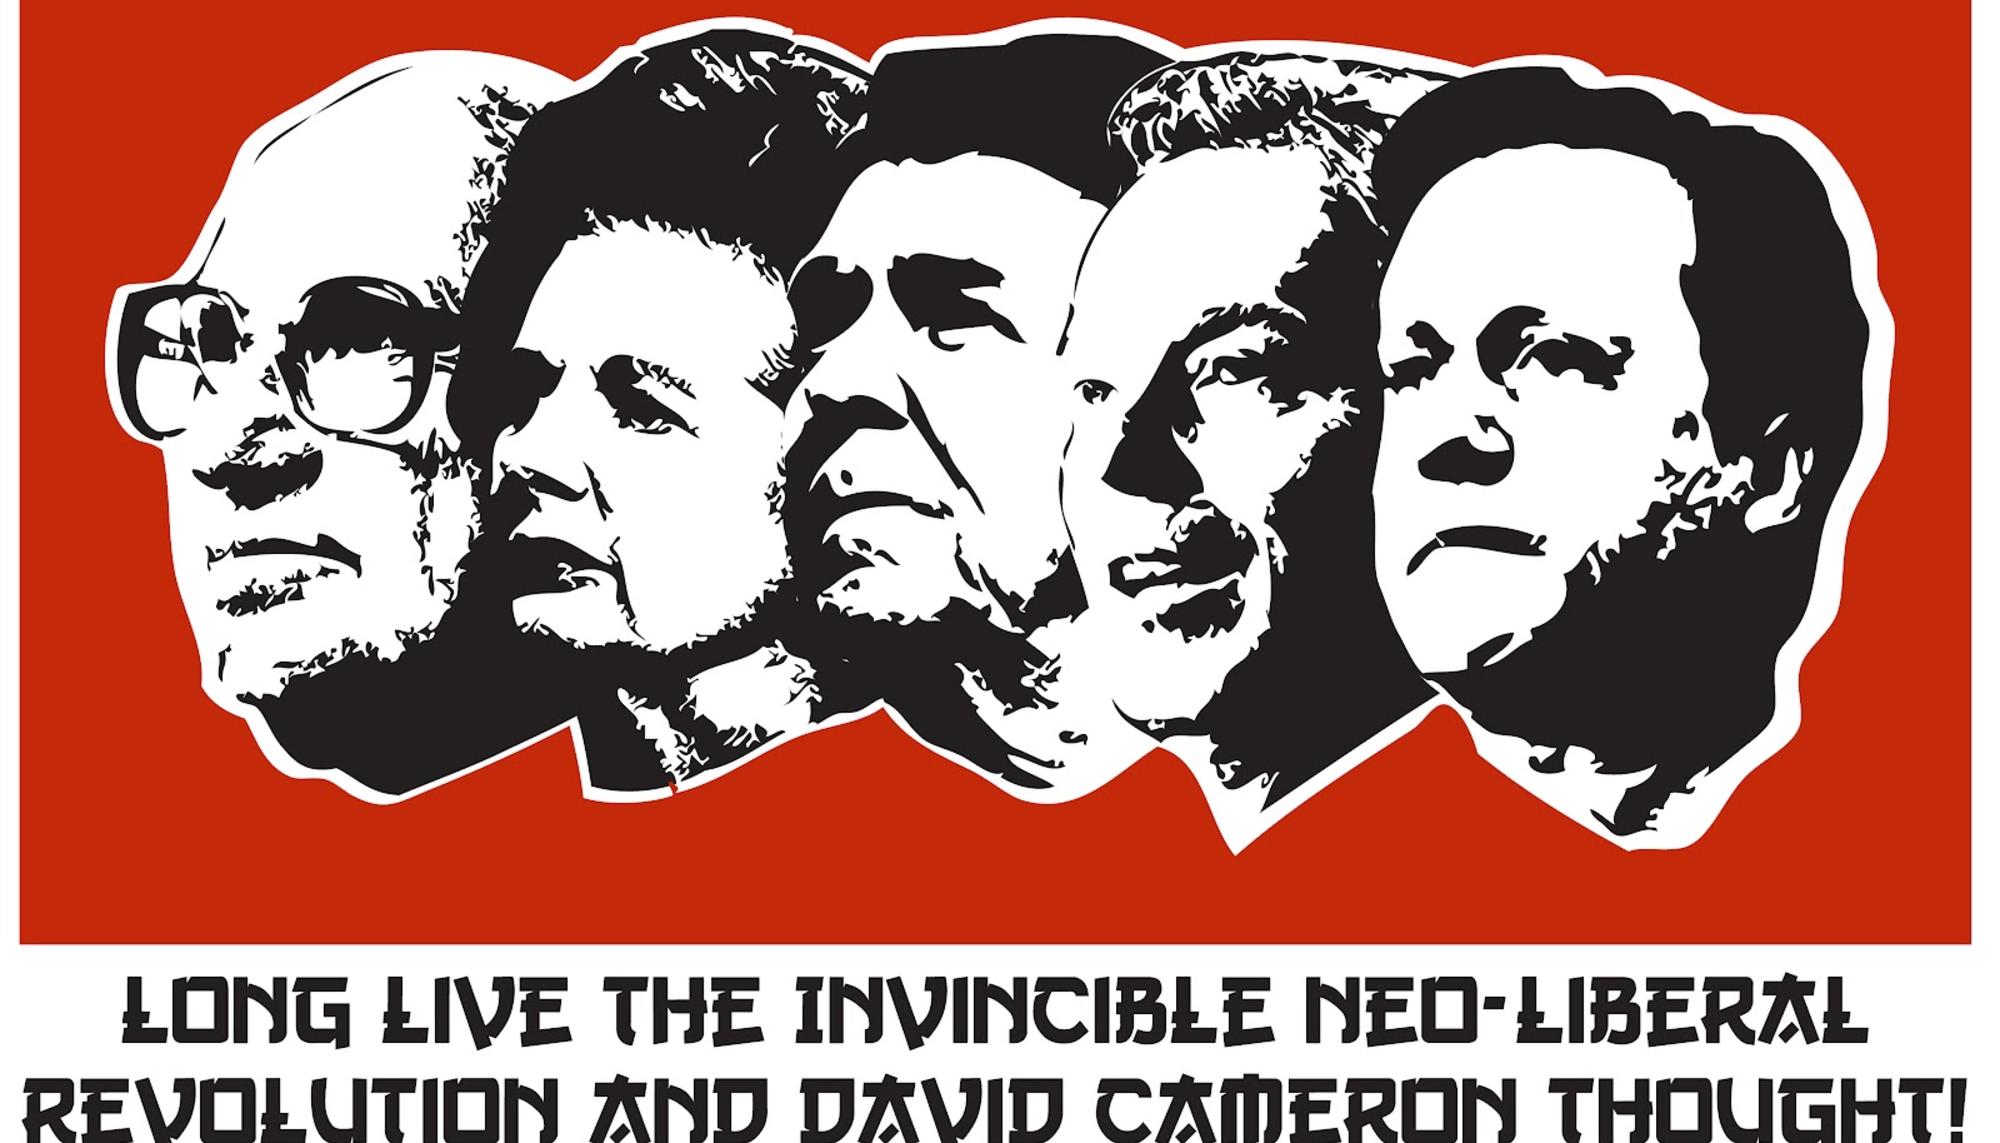 The invincible Neo-liberal Revolution